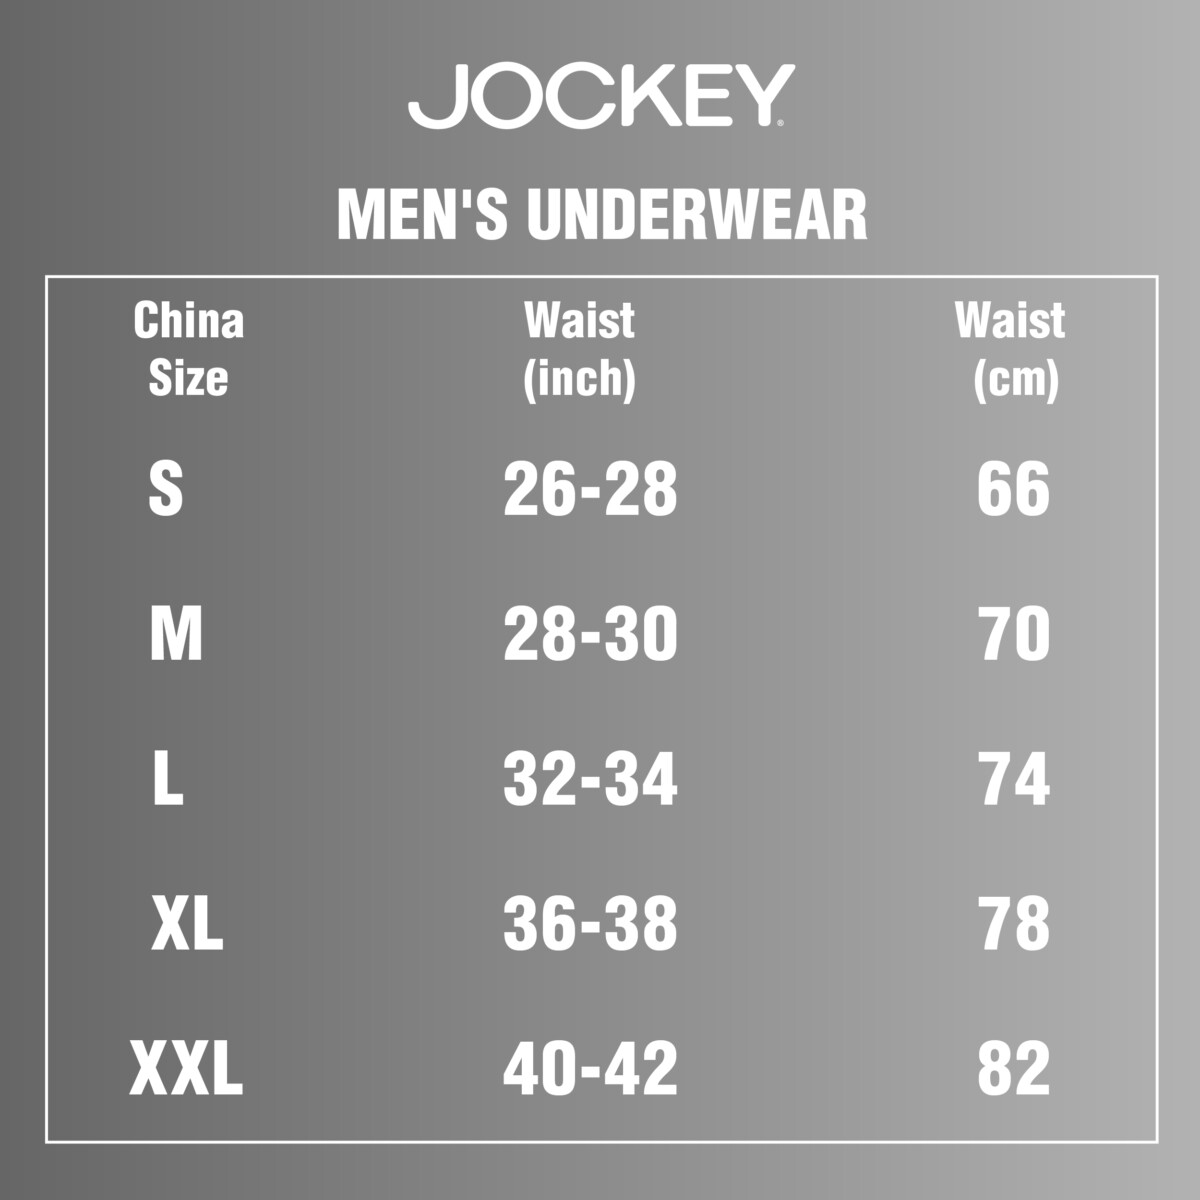 Jockey size chart - China Underwear